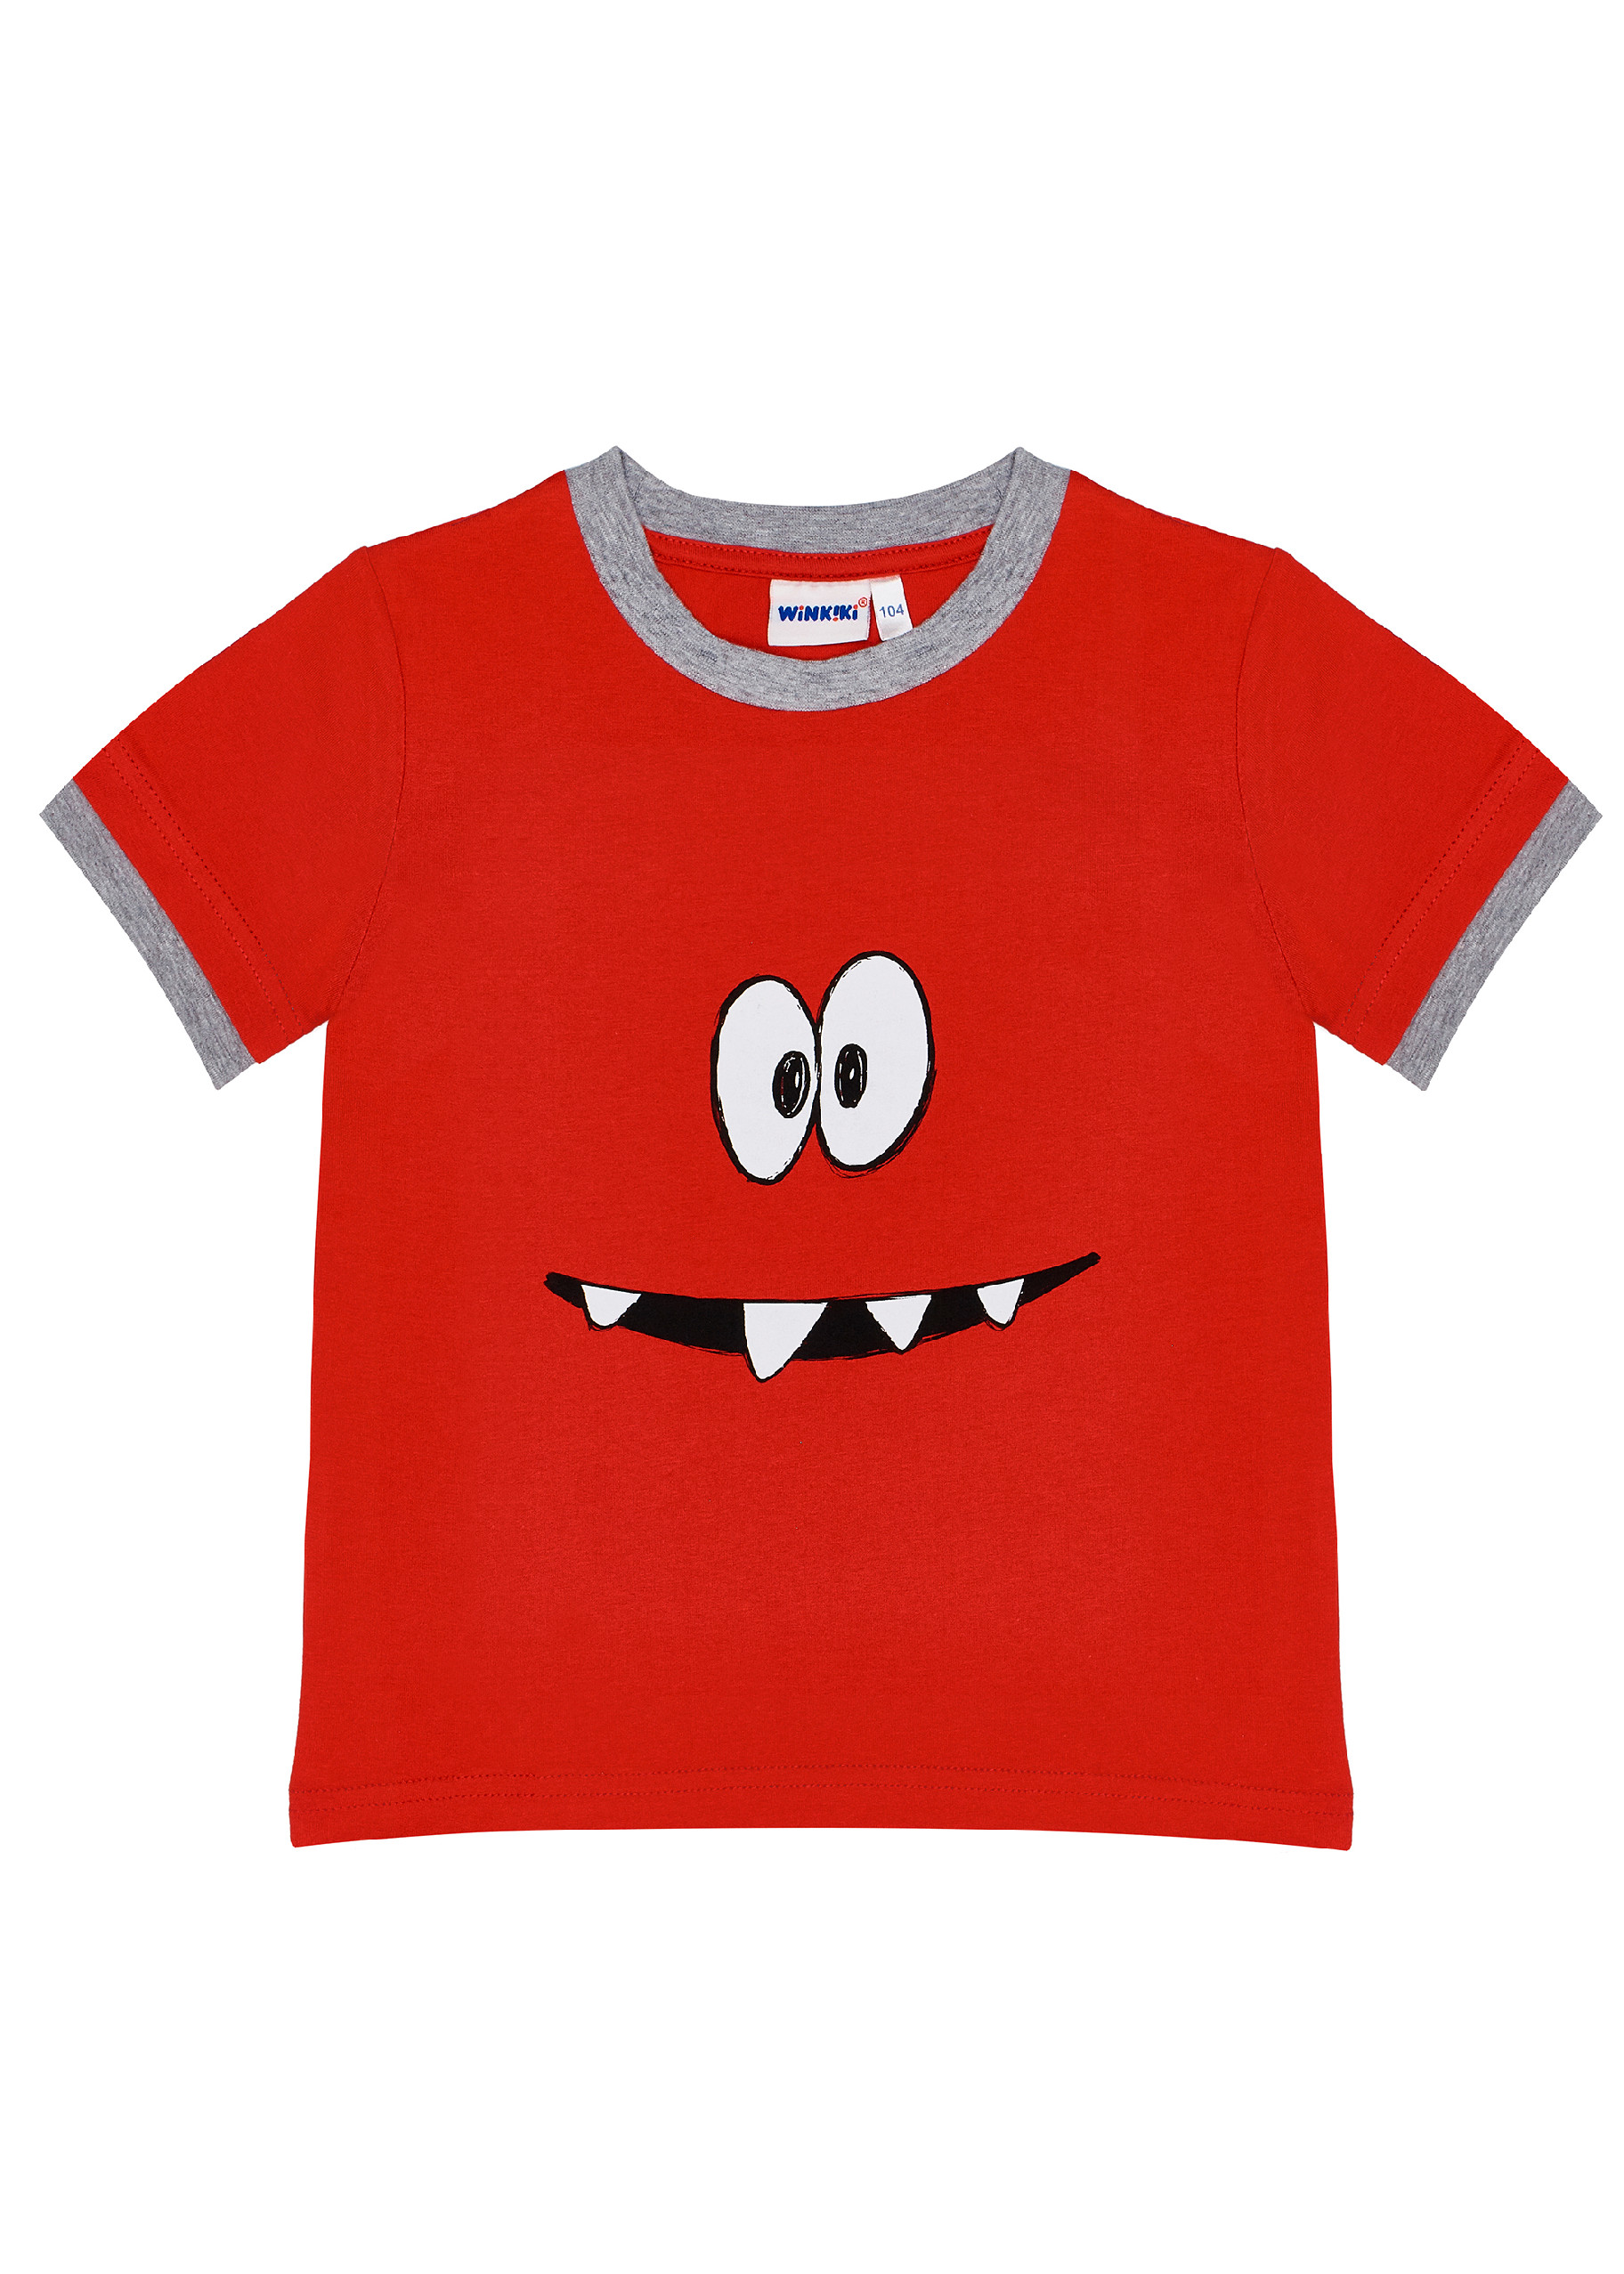 Chlapecké triko - Winkiki  WKB 91322, červená Barva: Červená, Velikost: 116